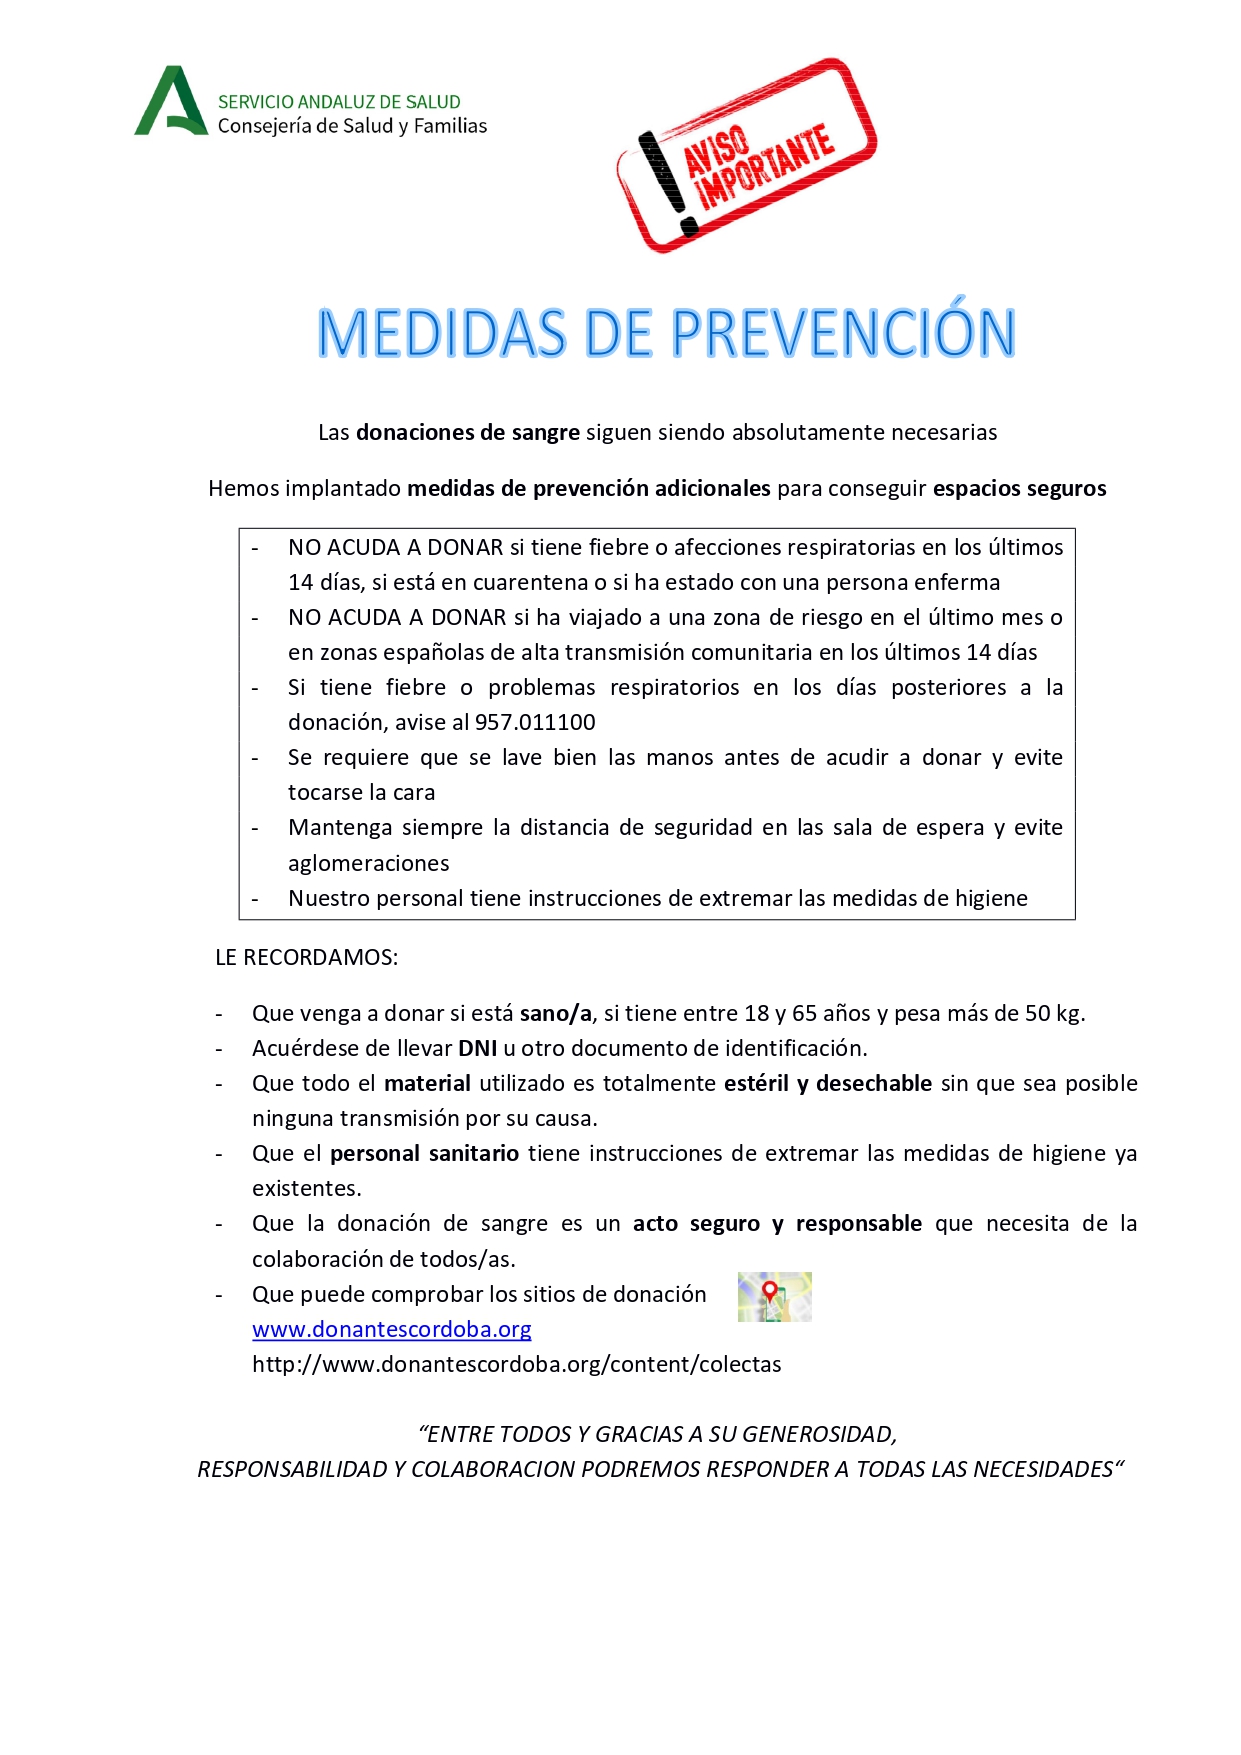 Medidas de prevención frente al Coronavirus